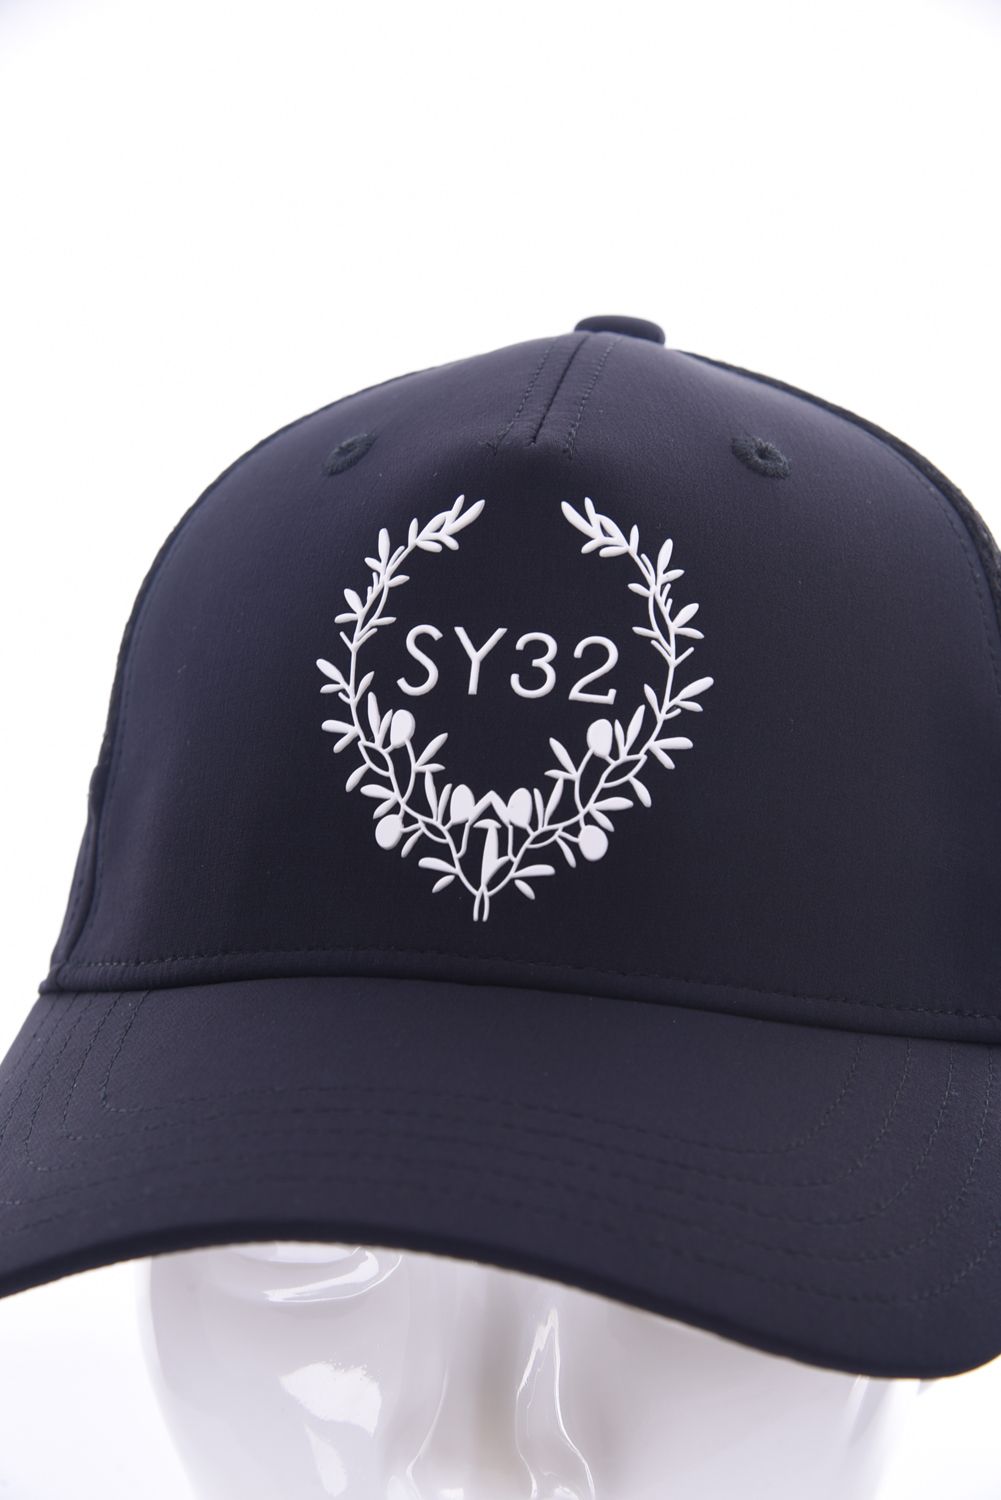 SY32 by SWEET YEARS GOLF - SYG OLIVE EMBLEM CAP / ブランド 